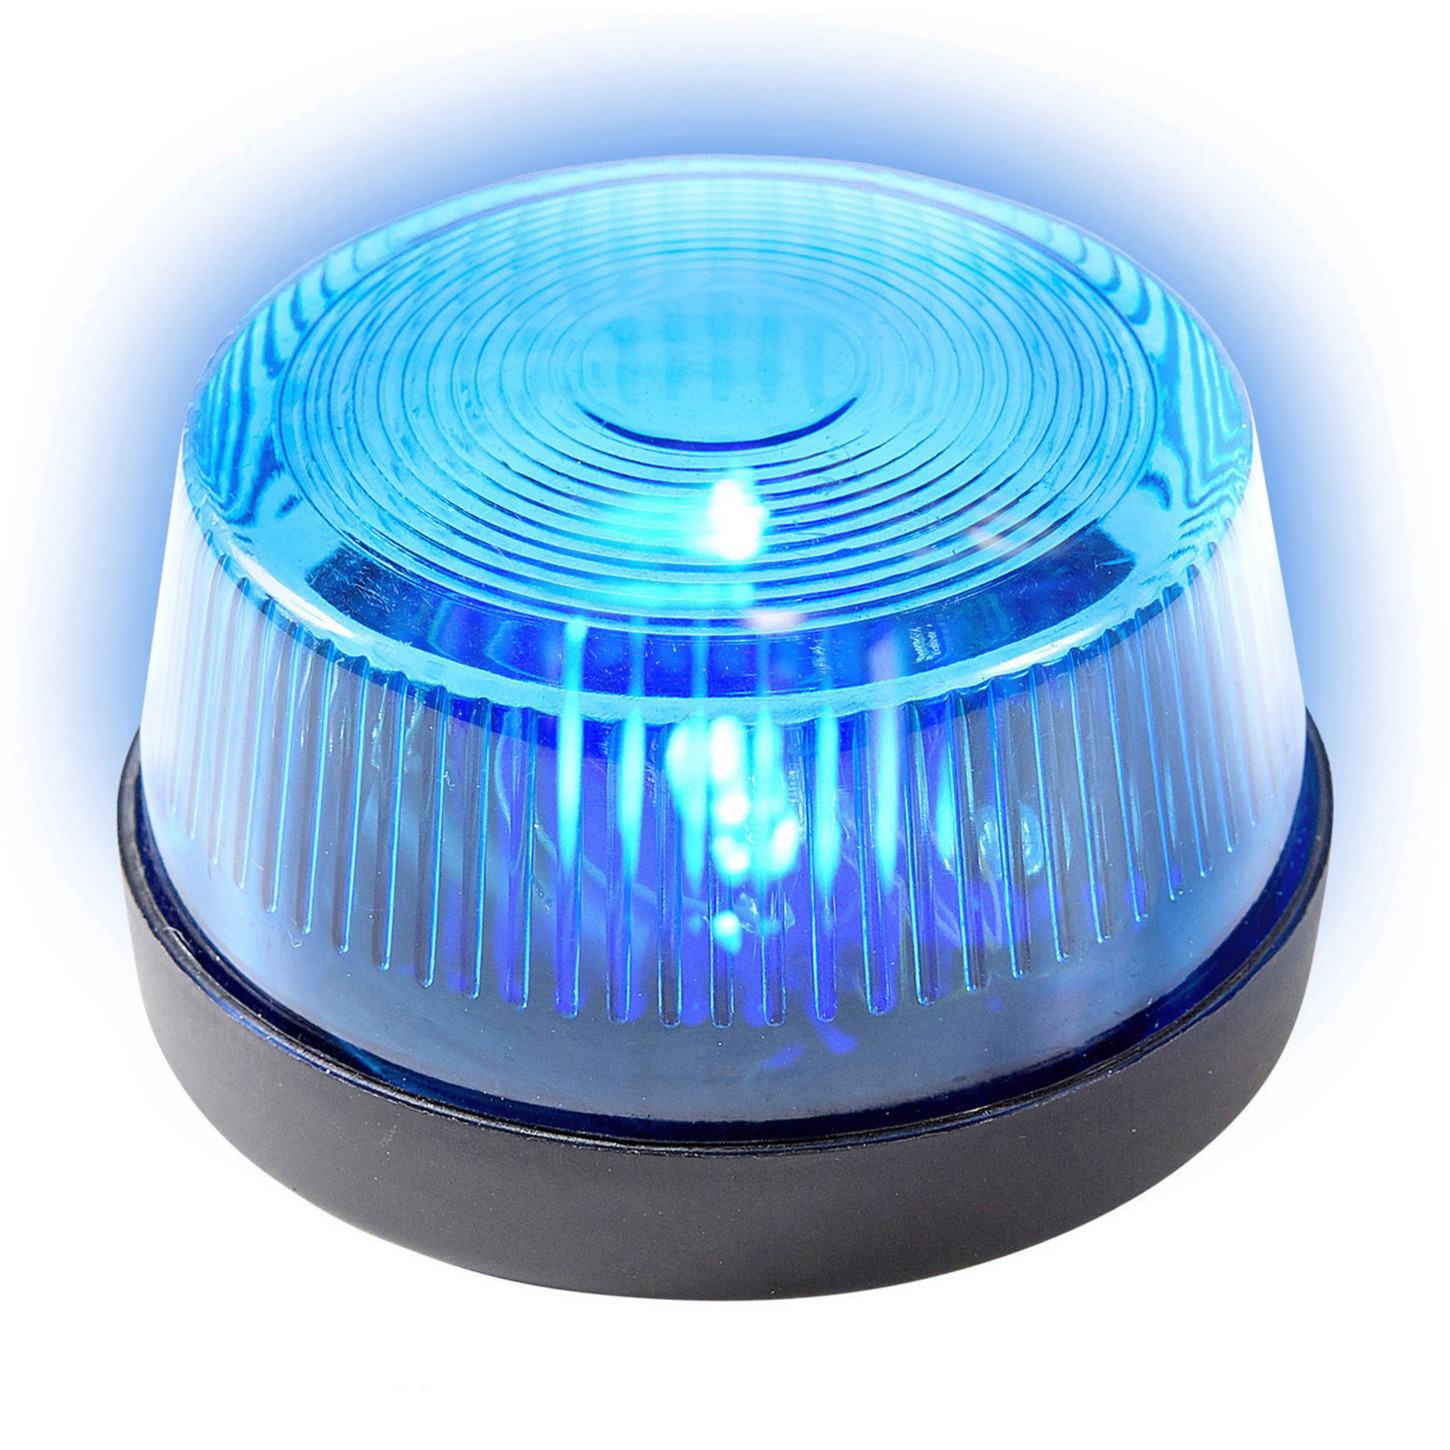 Signaallamp/signaallicht blauw led licht 10 cm politie speelgoed/feestverlichting